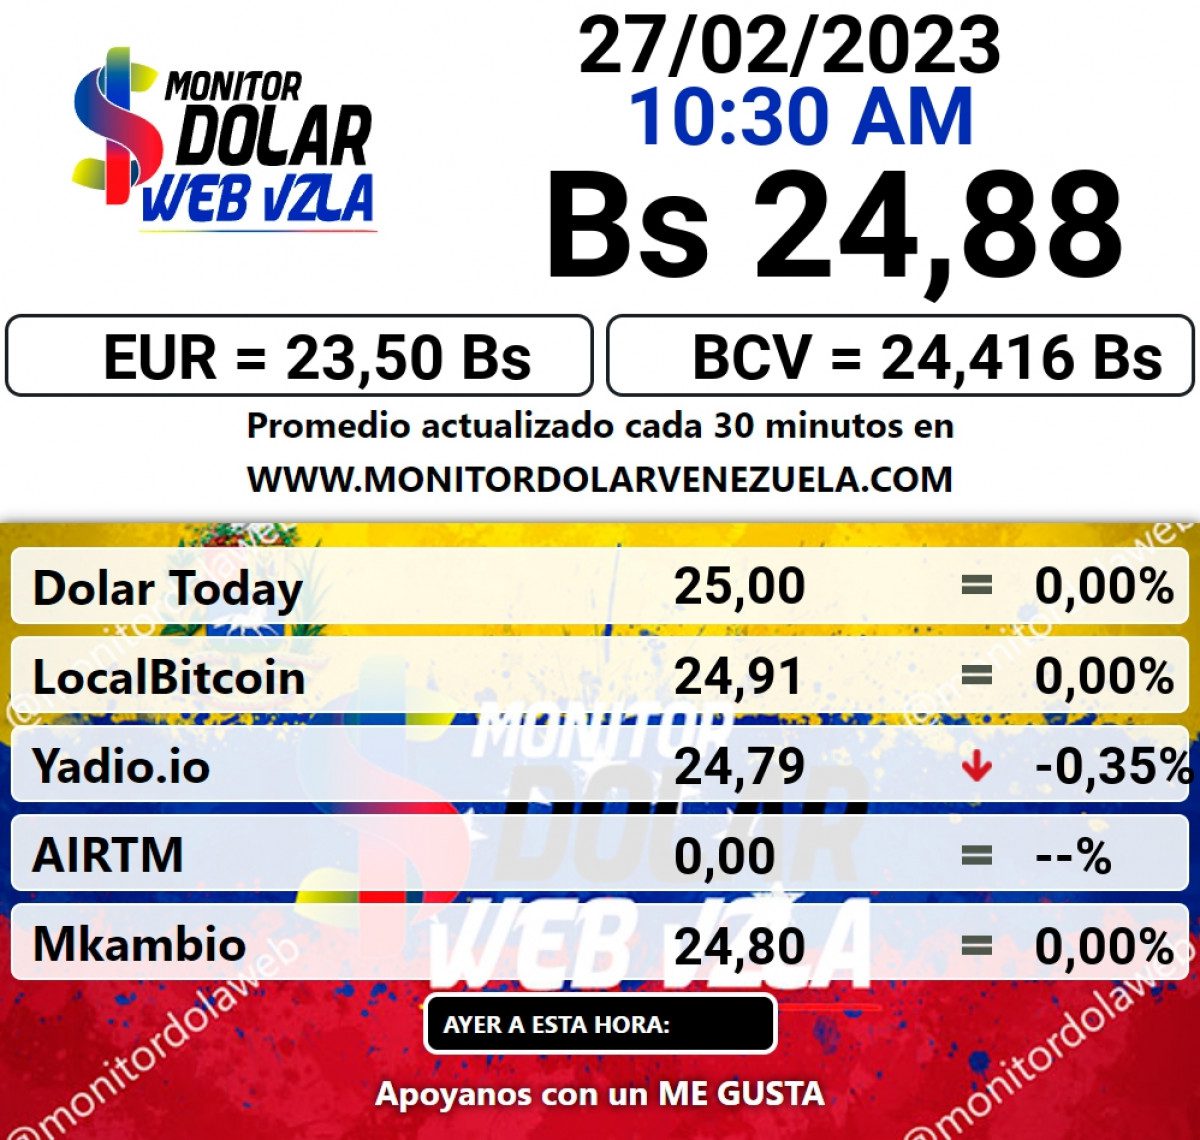 dolartoday en venezuela precio del dolar este lunes 27 de febrero de 2023 laverdaddemonagas.com monitor89898